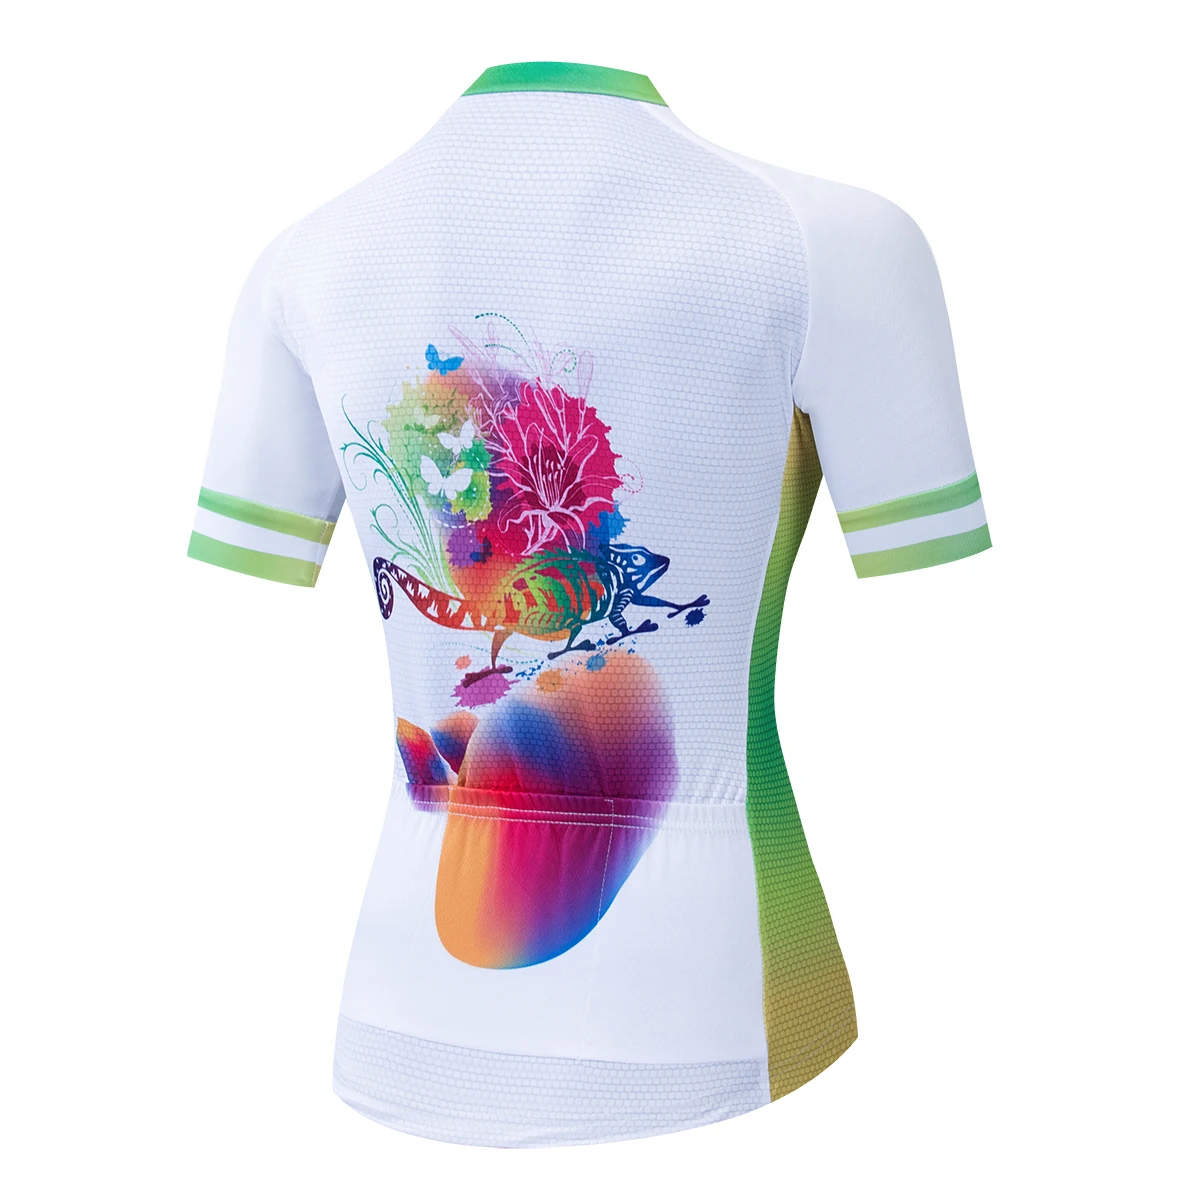 Camisa ciclismo mujer, летняя футболка с коротким рукавом для велоспорта, женская одежда для велоспорта, Camisa ciclismo verano mujeres maillot bici